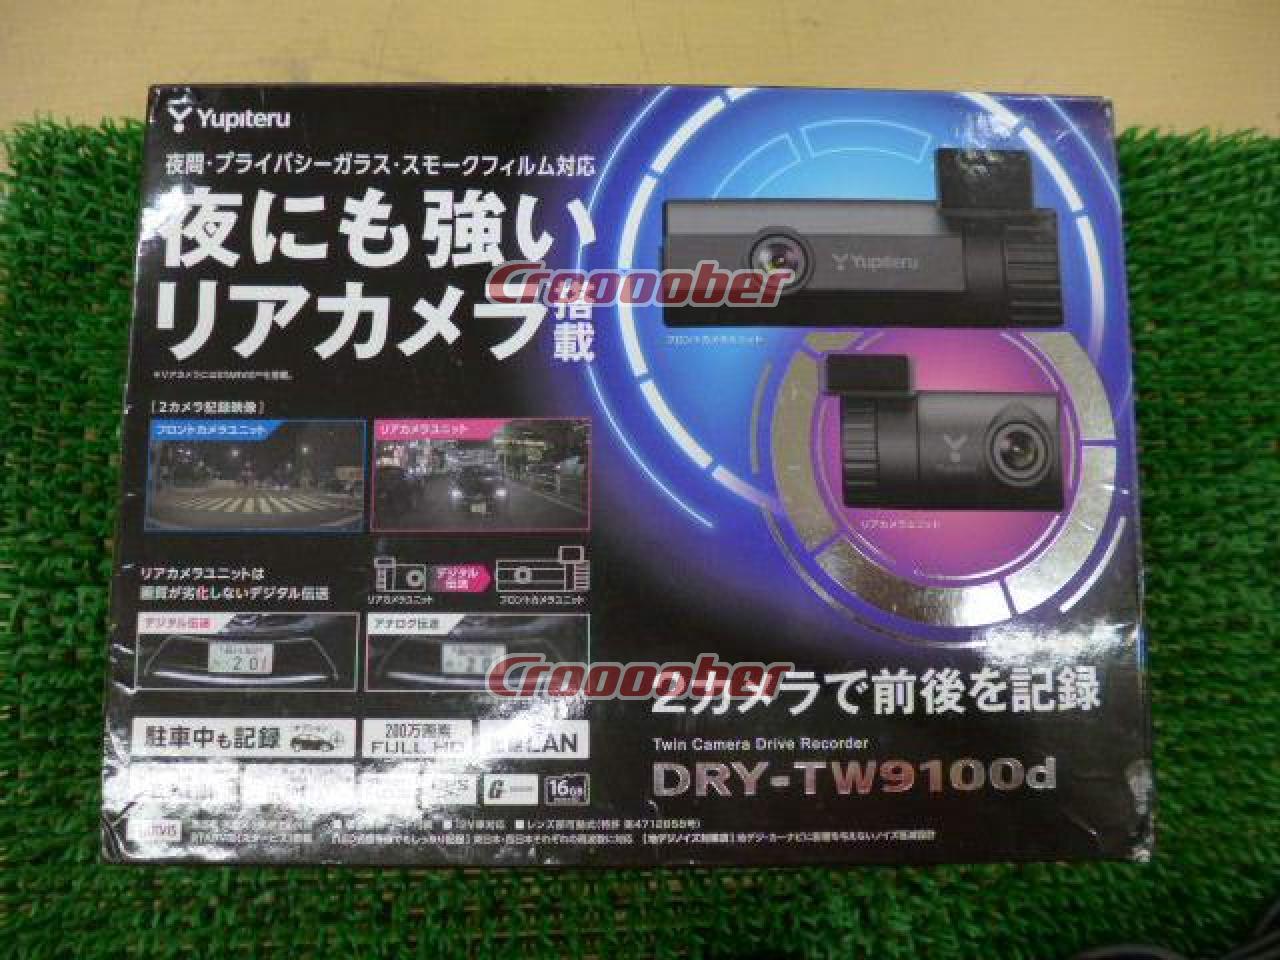 日本限定モデル】 DRY-TW9100D YUPITERU - ドライブレコーダー - www.smithsfalls.ca